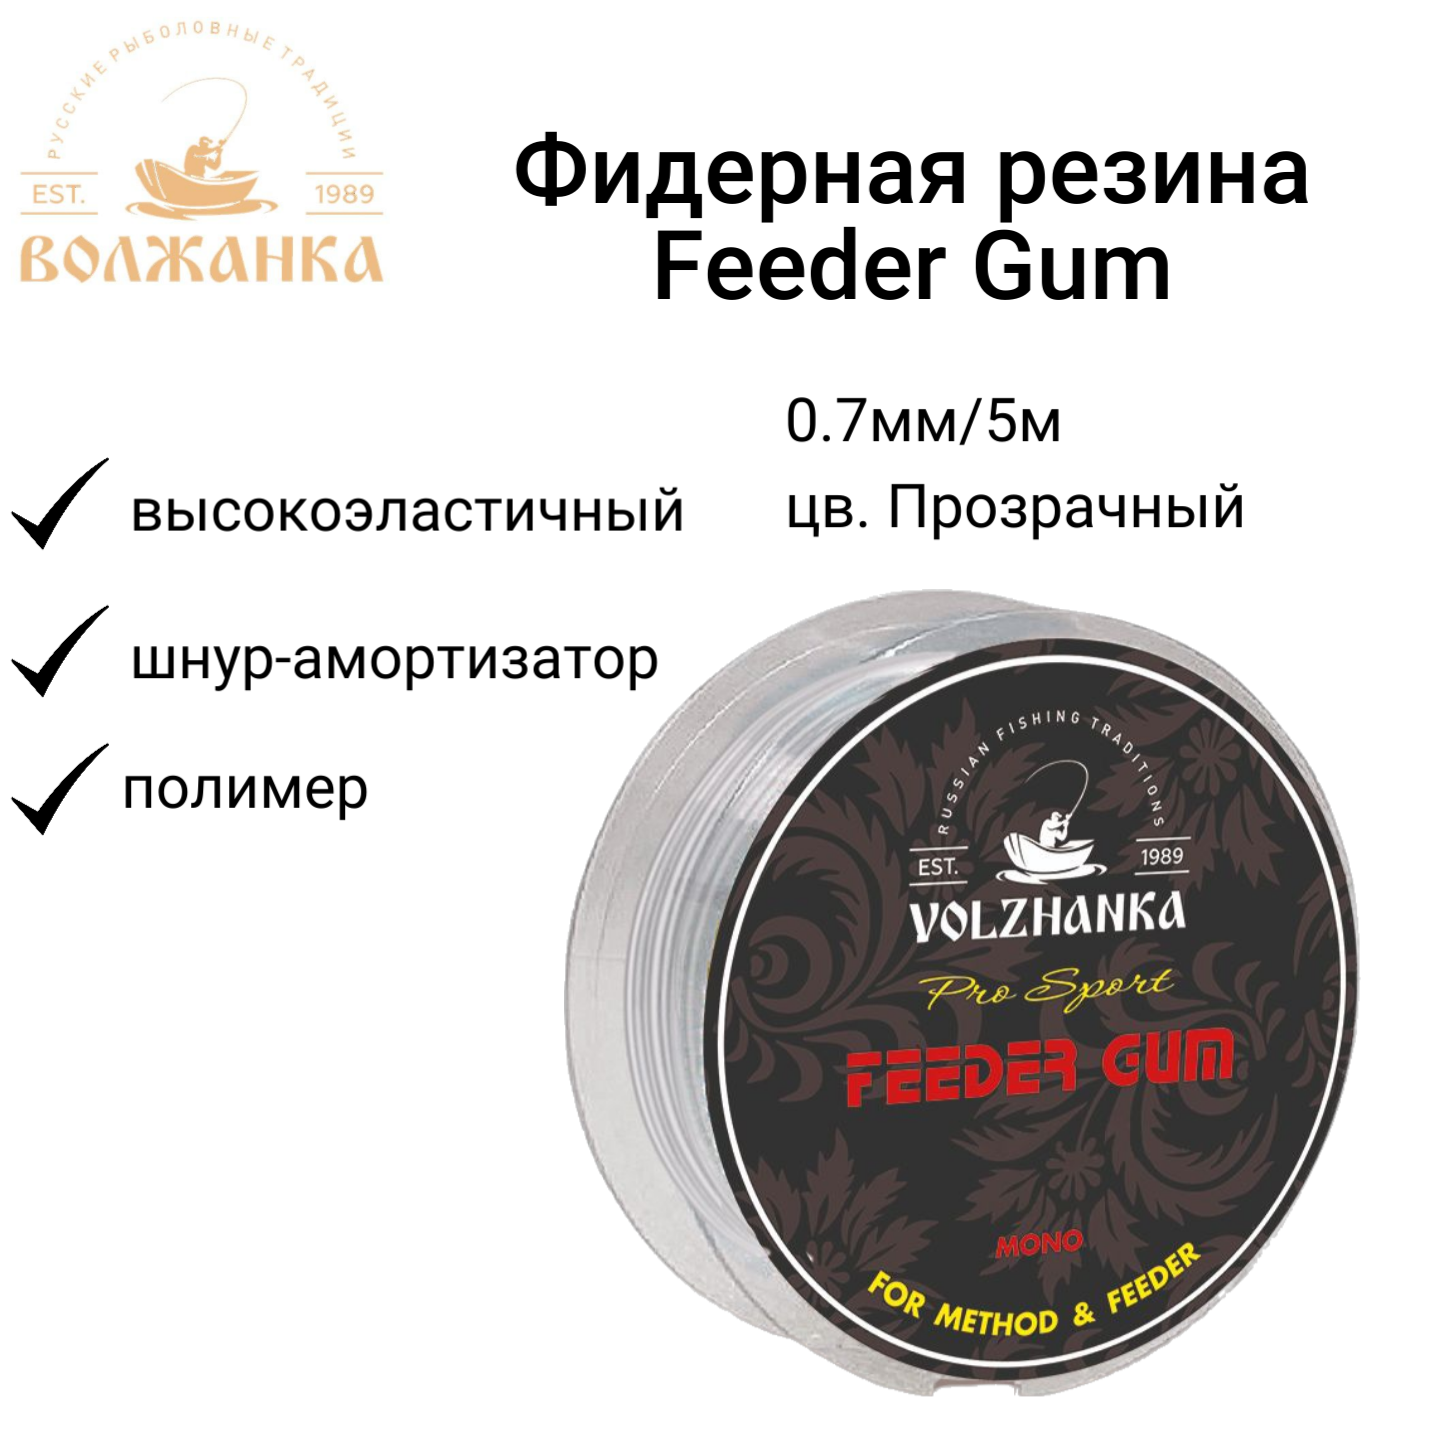 Фидерная резина Волжанка "Feeder Gum" 0.7мм/5м цв. Прозрачный/Фидергам